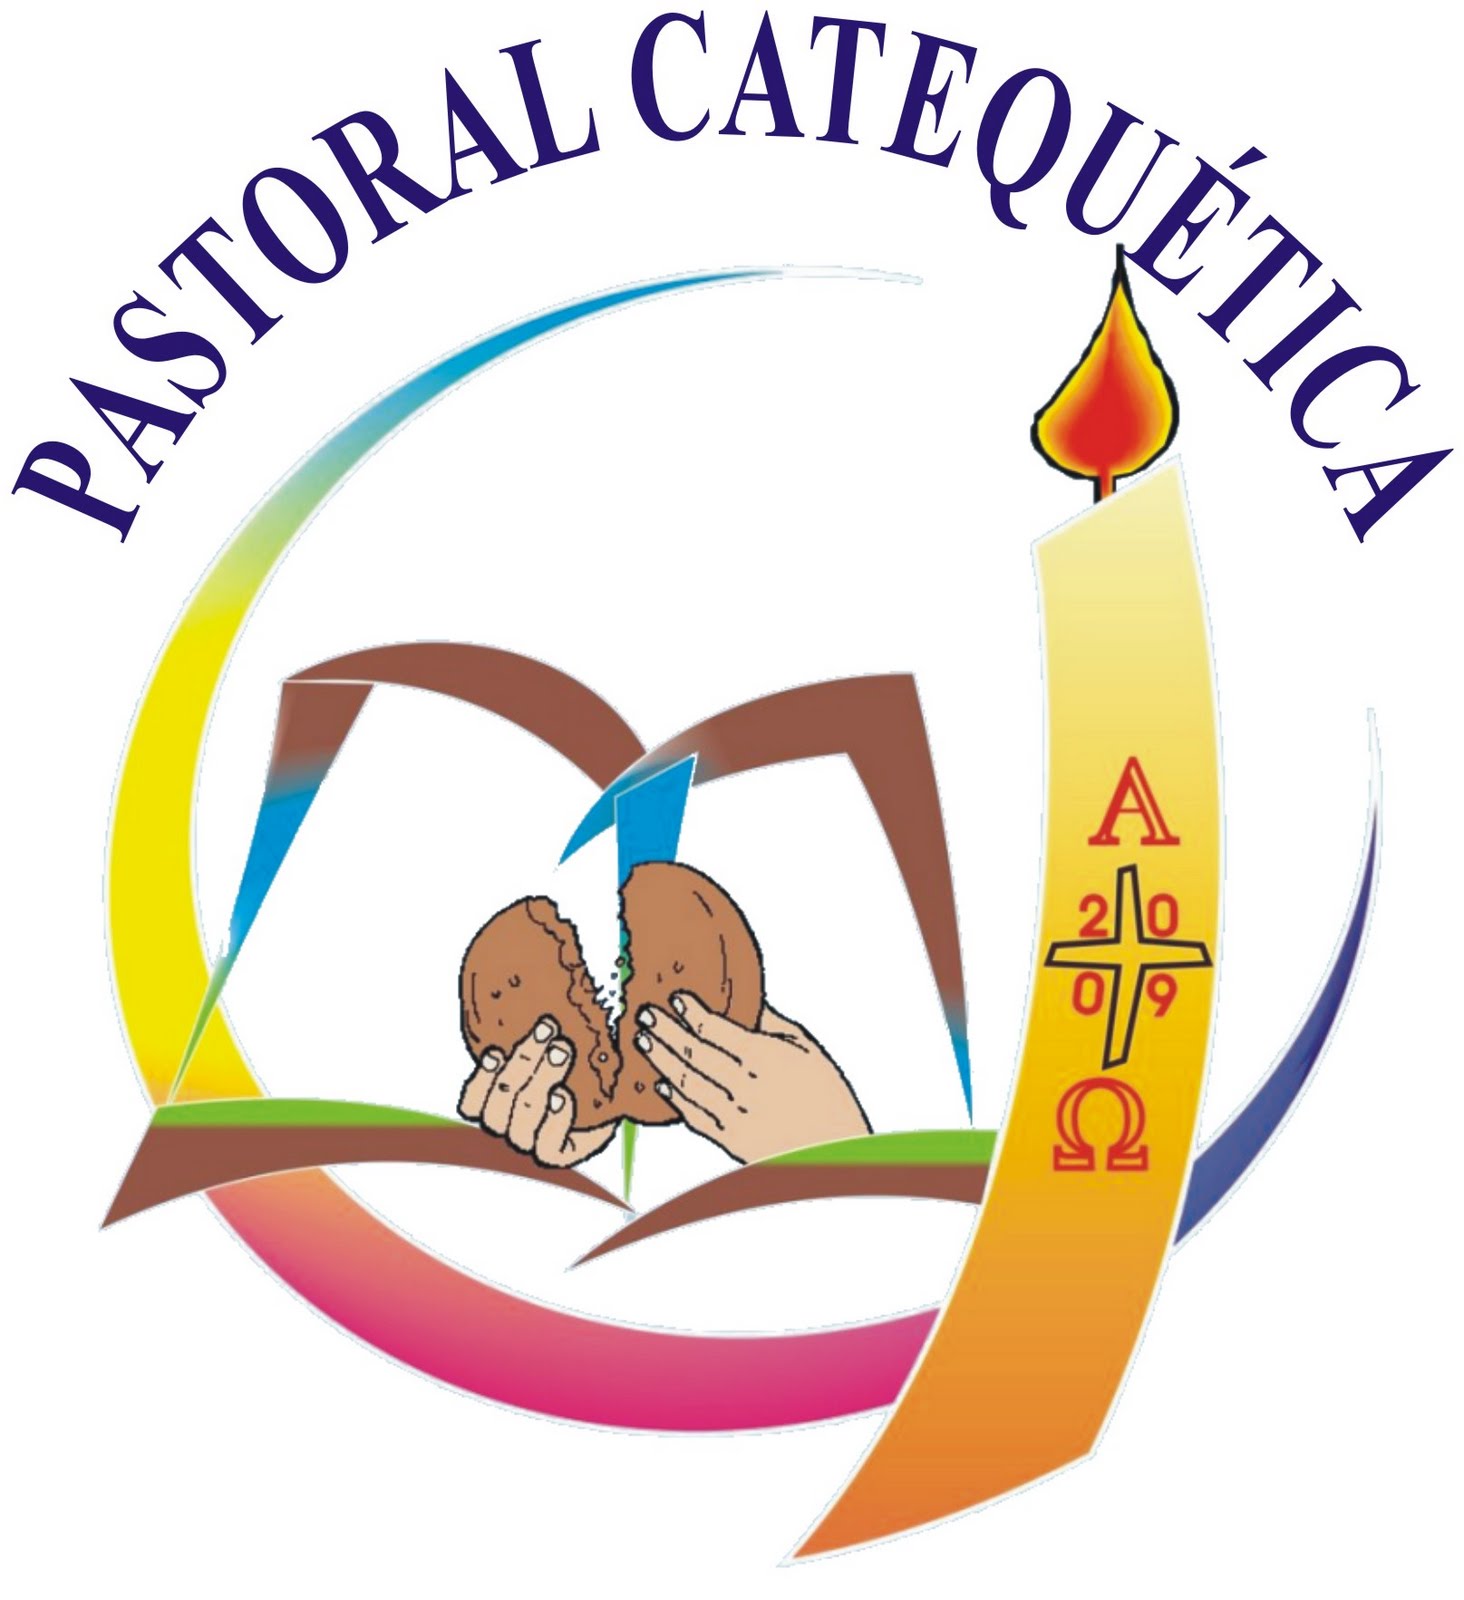 PASTORAL BÍBLICO CATEQUETICA (São José do Rio Preto/SP)